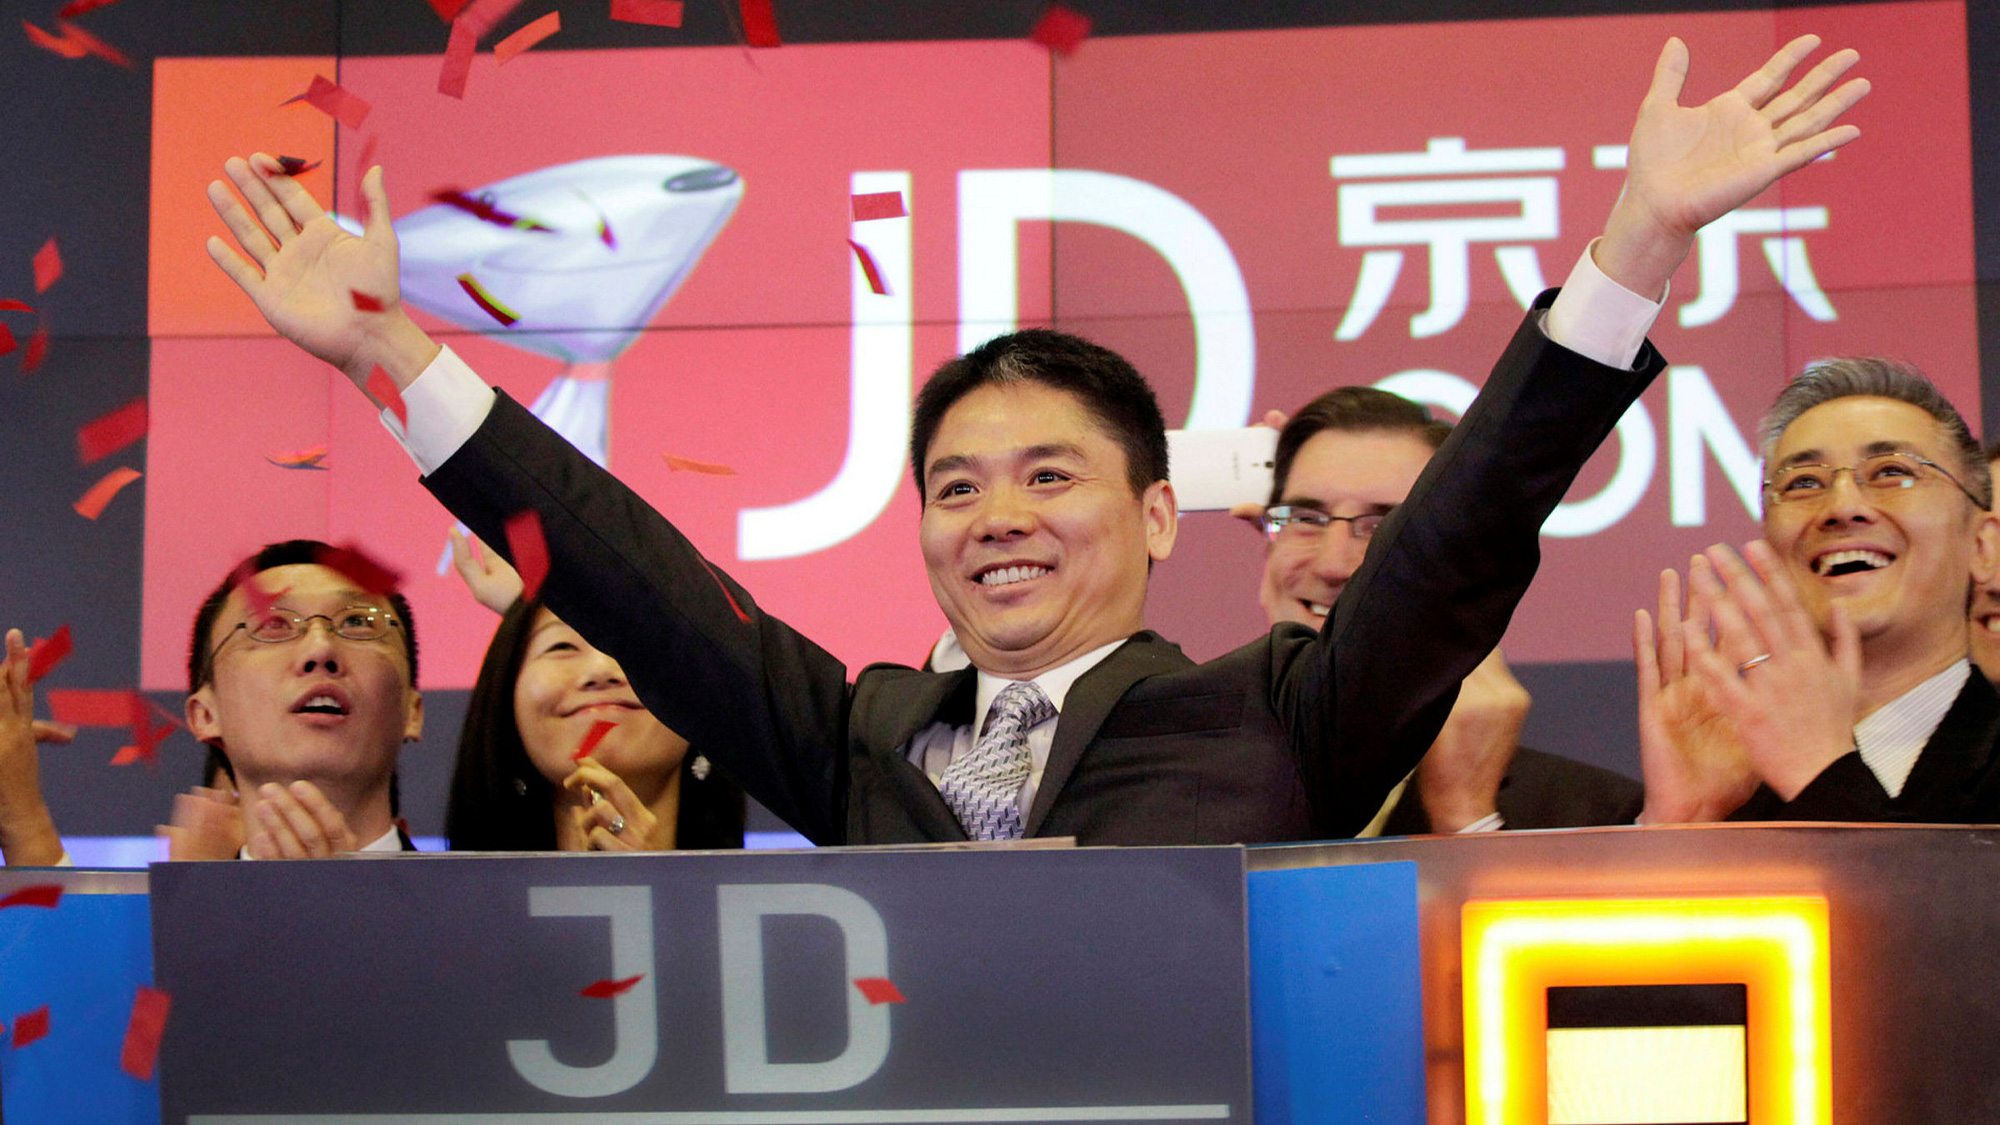 Liu thành lập JD.com vào năm 1998. Ảnh: @AFP.